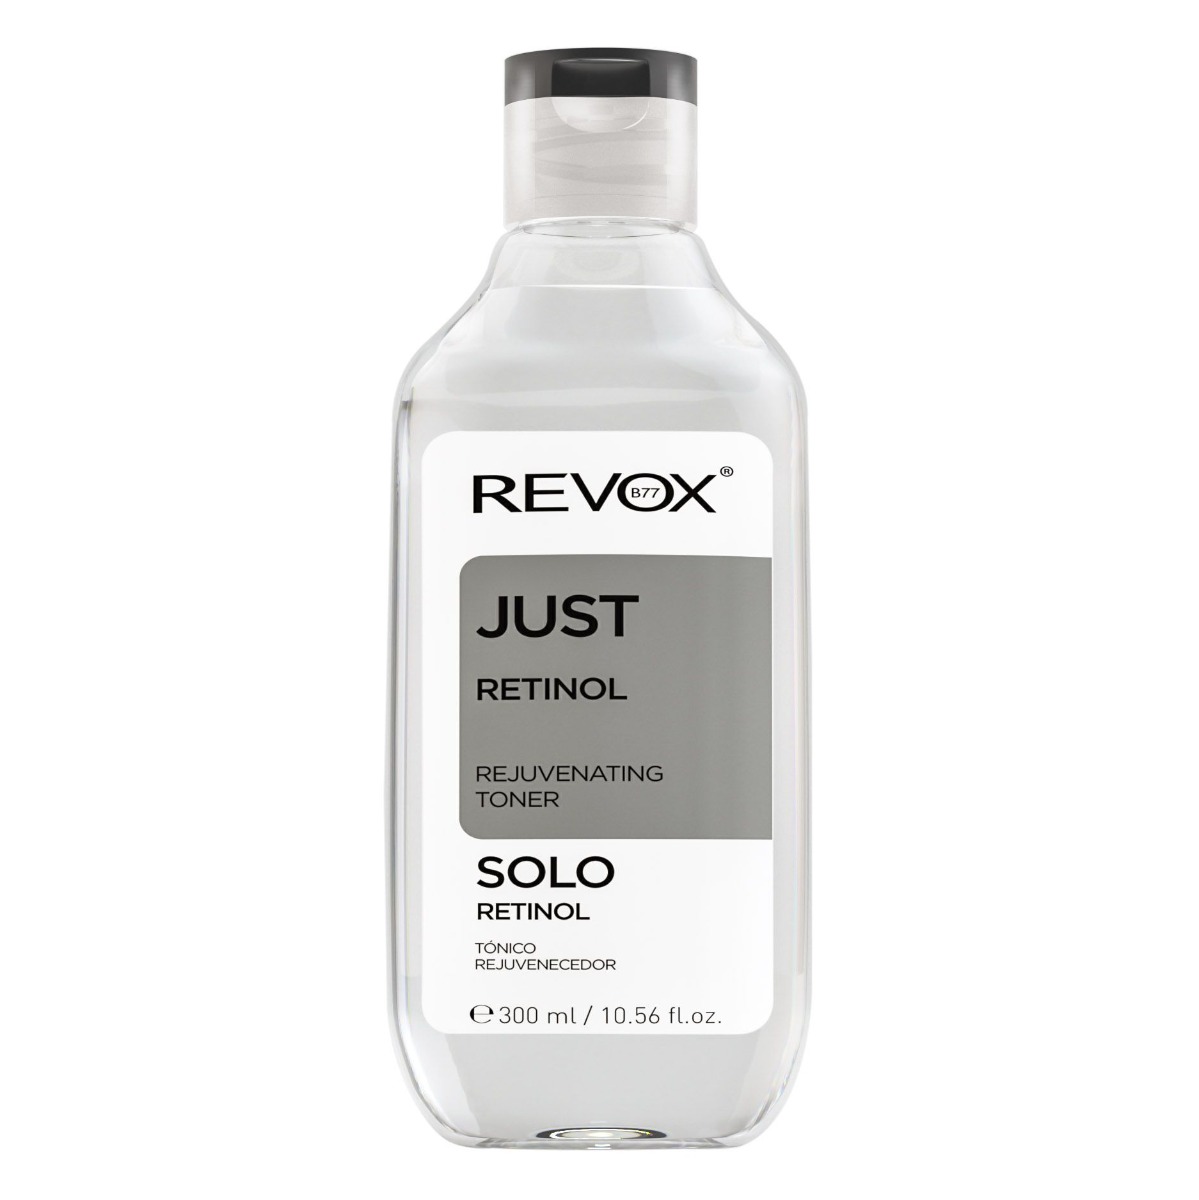 Revox Just Retinol pleťové tonikum 300 ml Revox